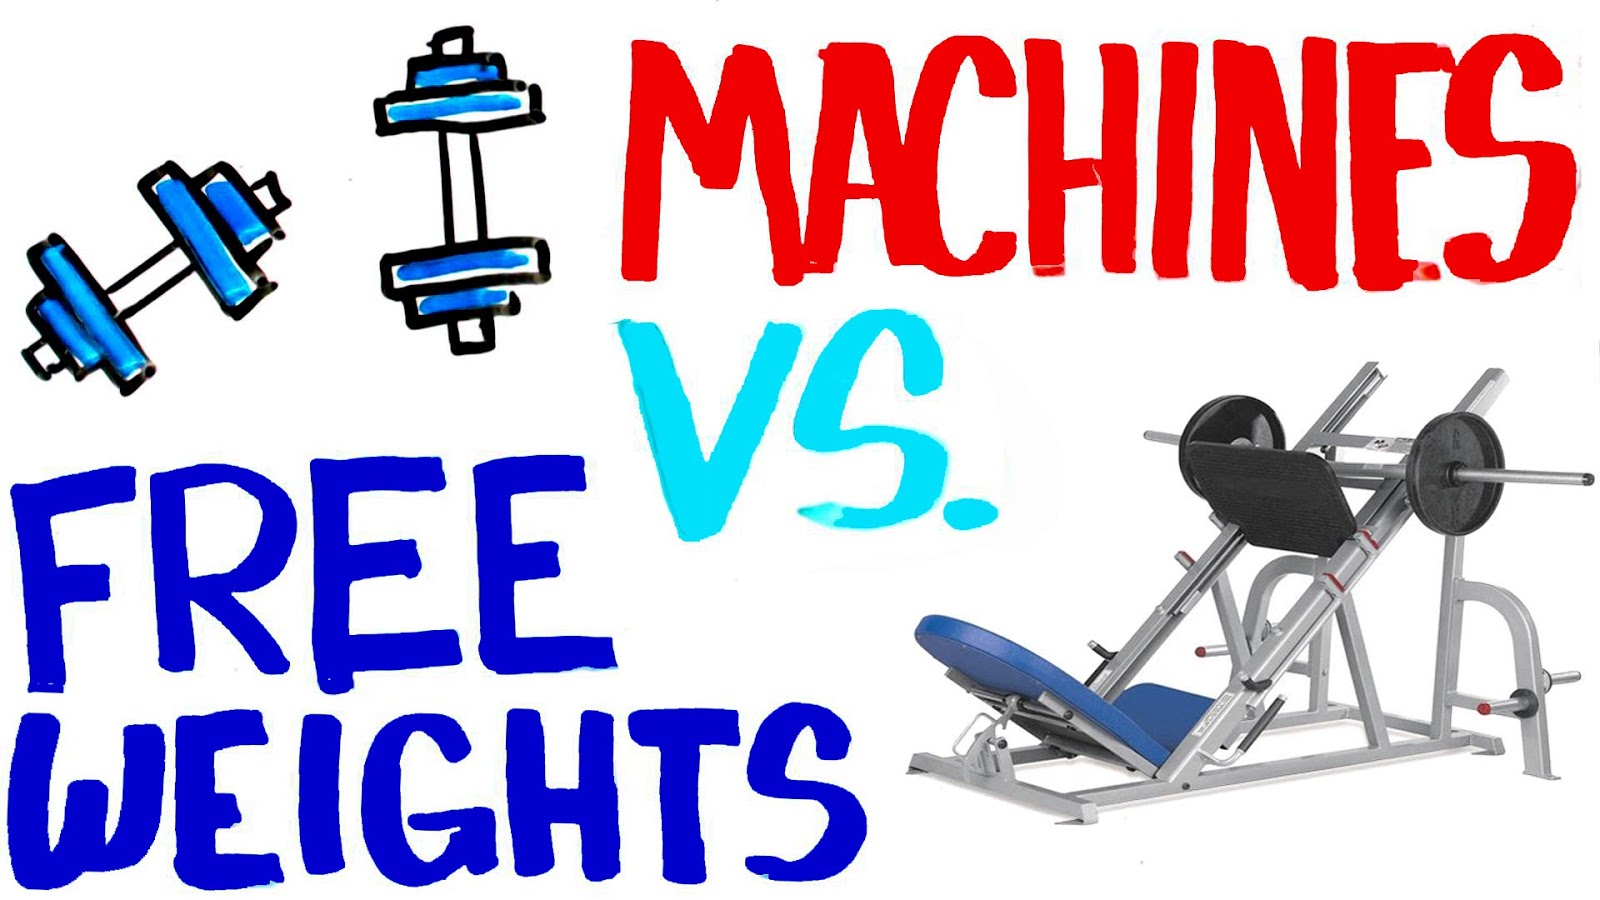 Free Weights vs Machines